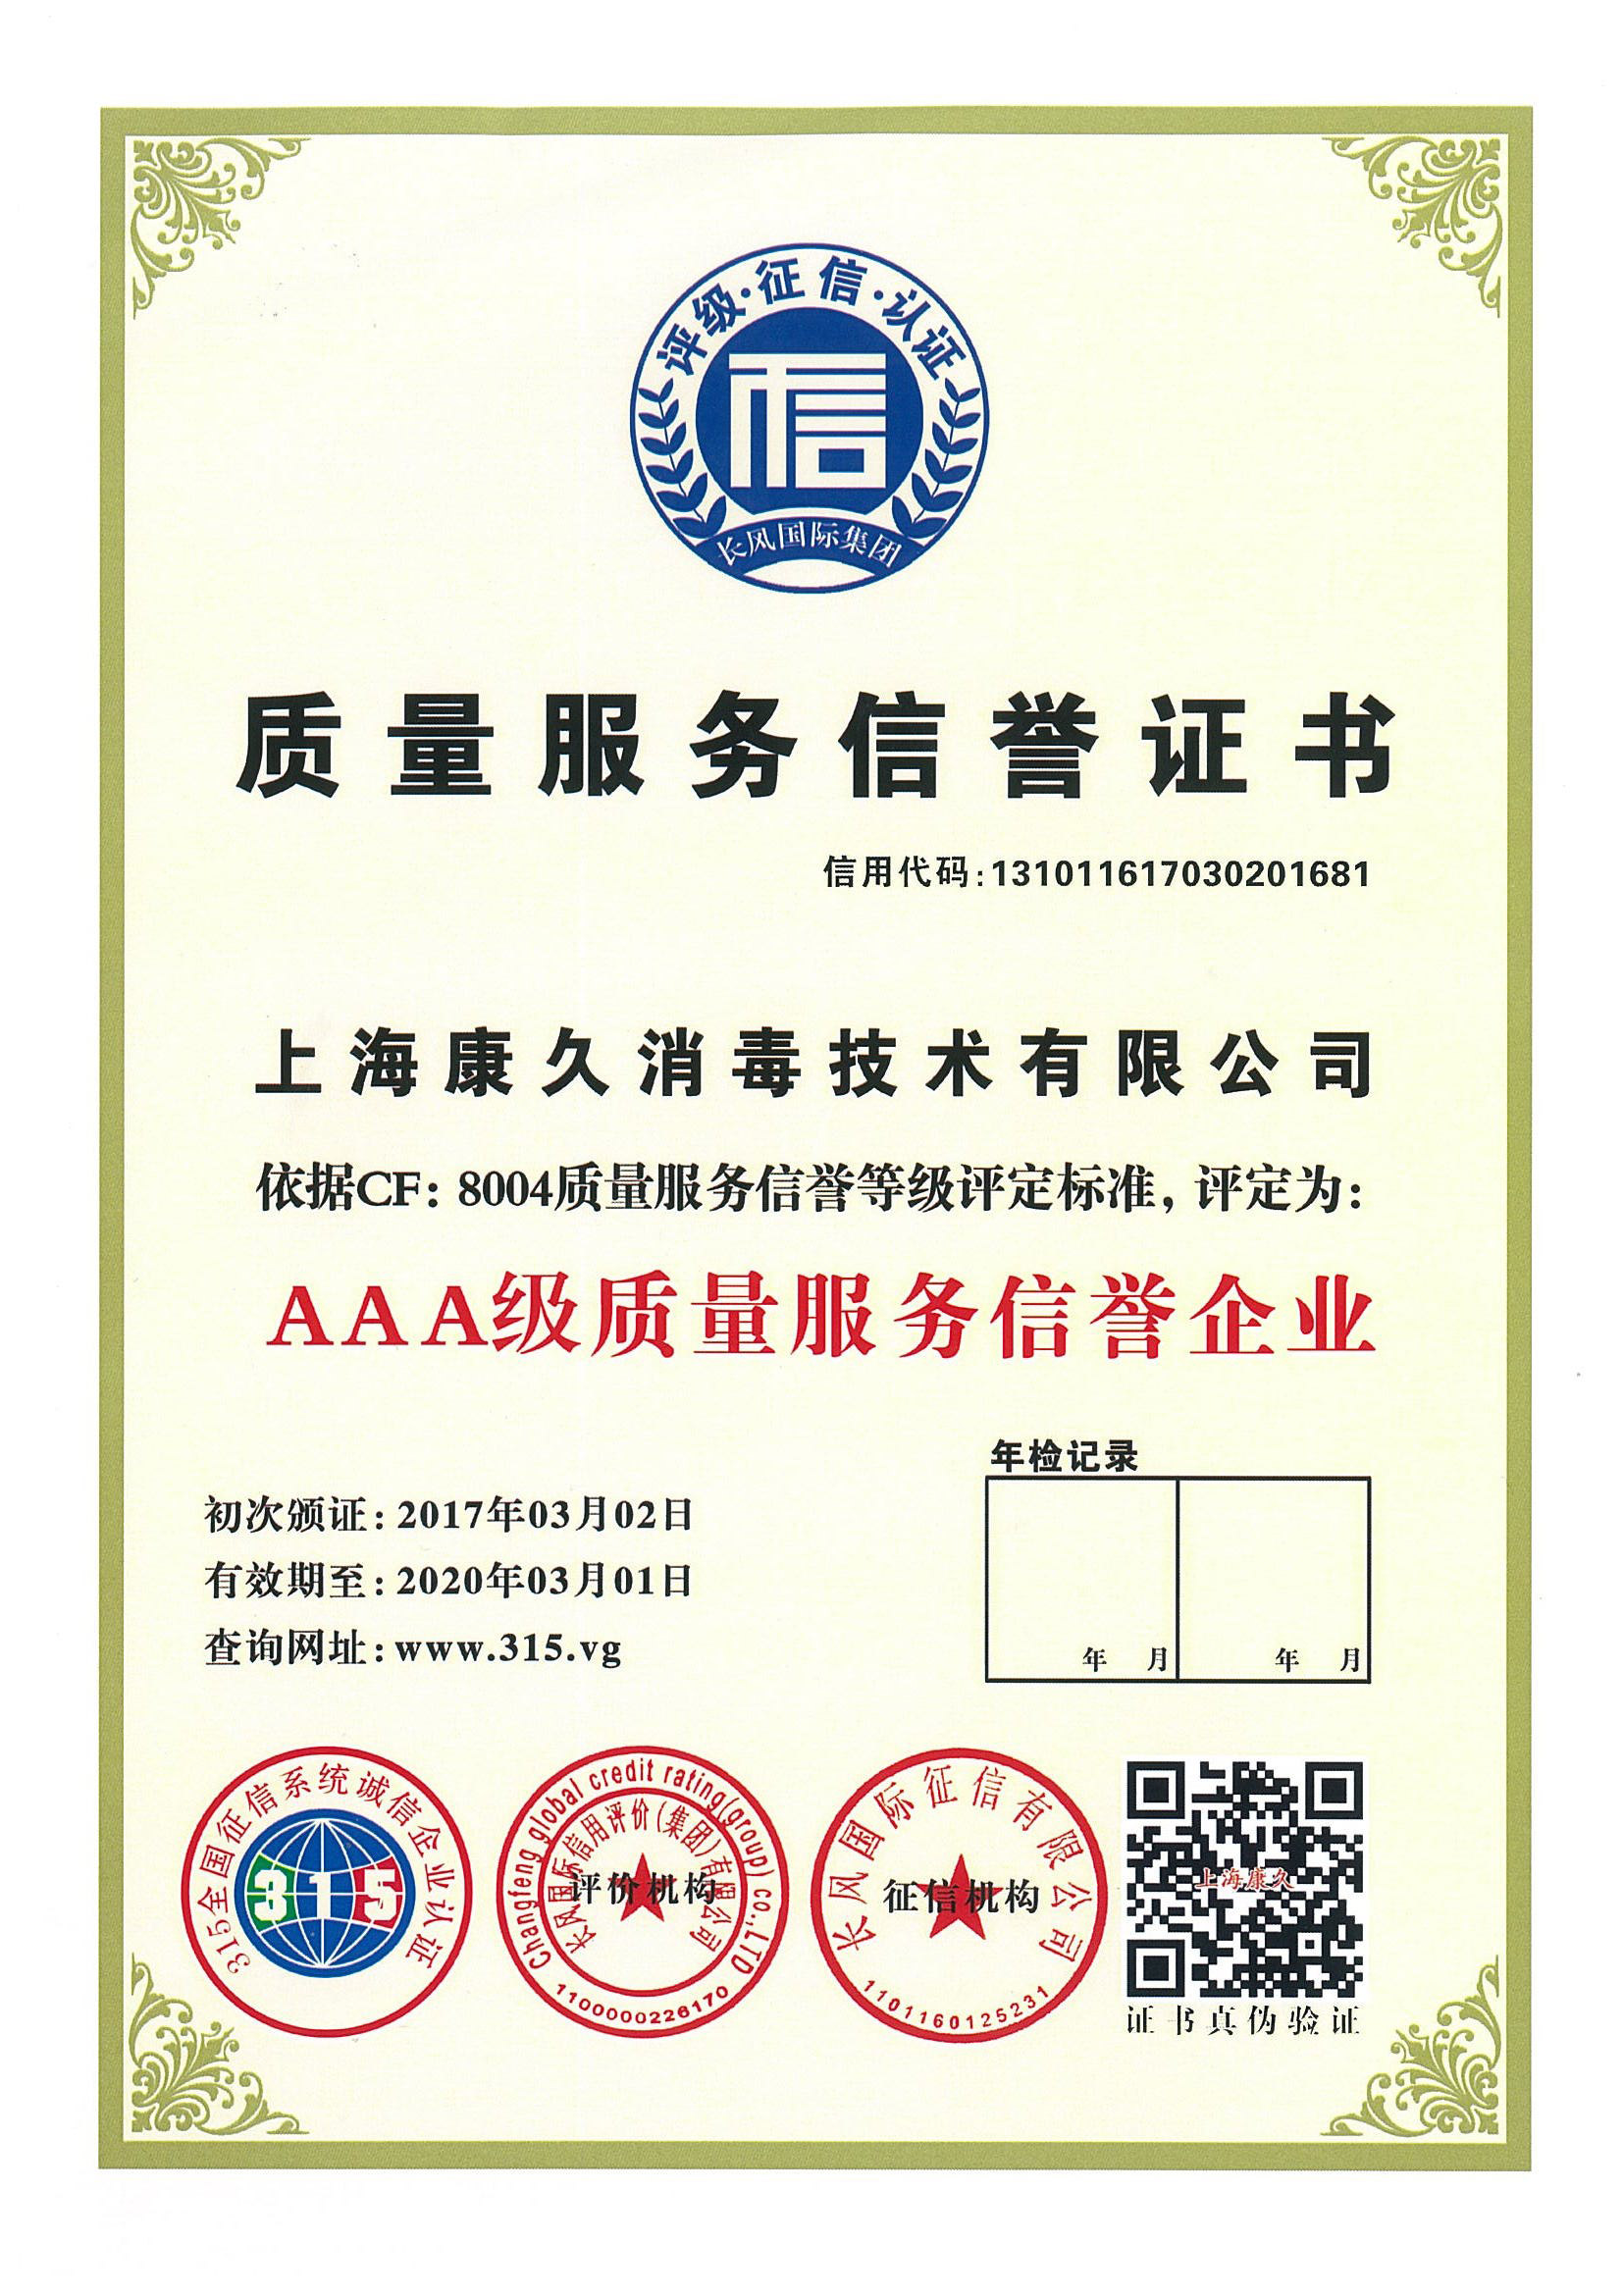 “温州质量服务信誉证书